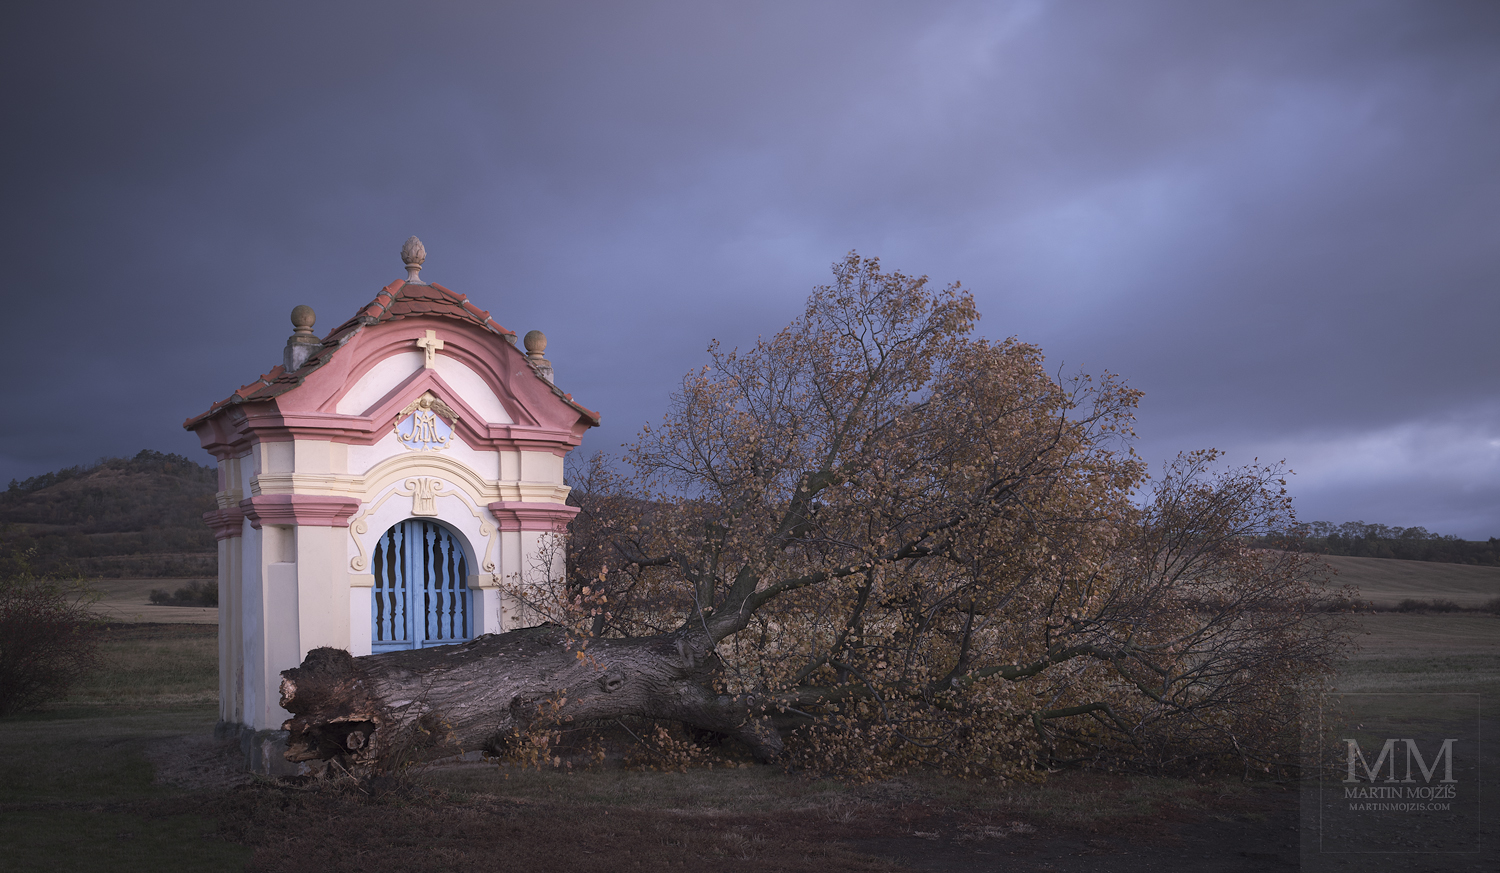 Spadlý strom před kapličkou v krajině. Umělecká fotografie s názvem PO VELIKÉM VĚTRU. Fotograf Martin Mojžíš.